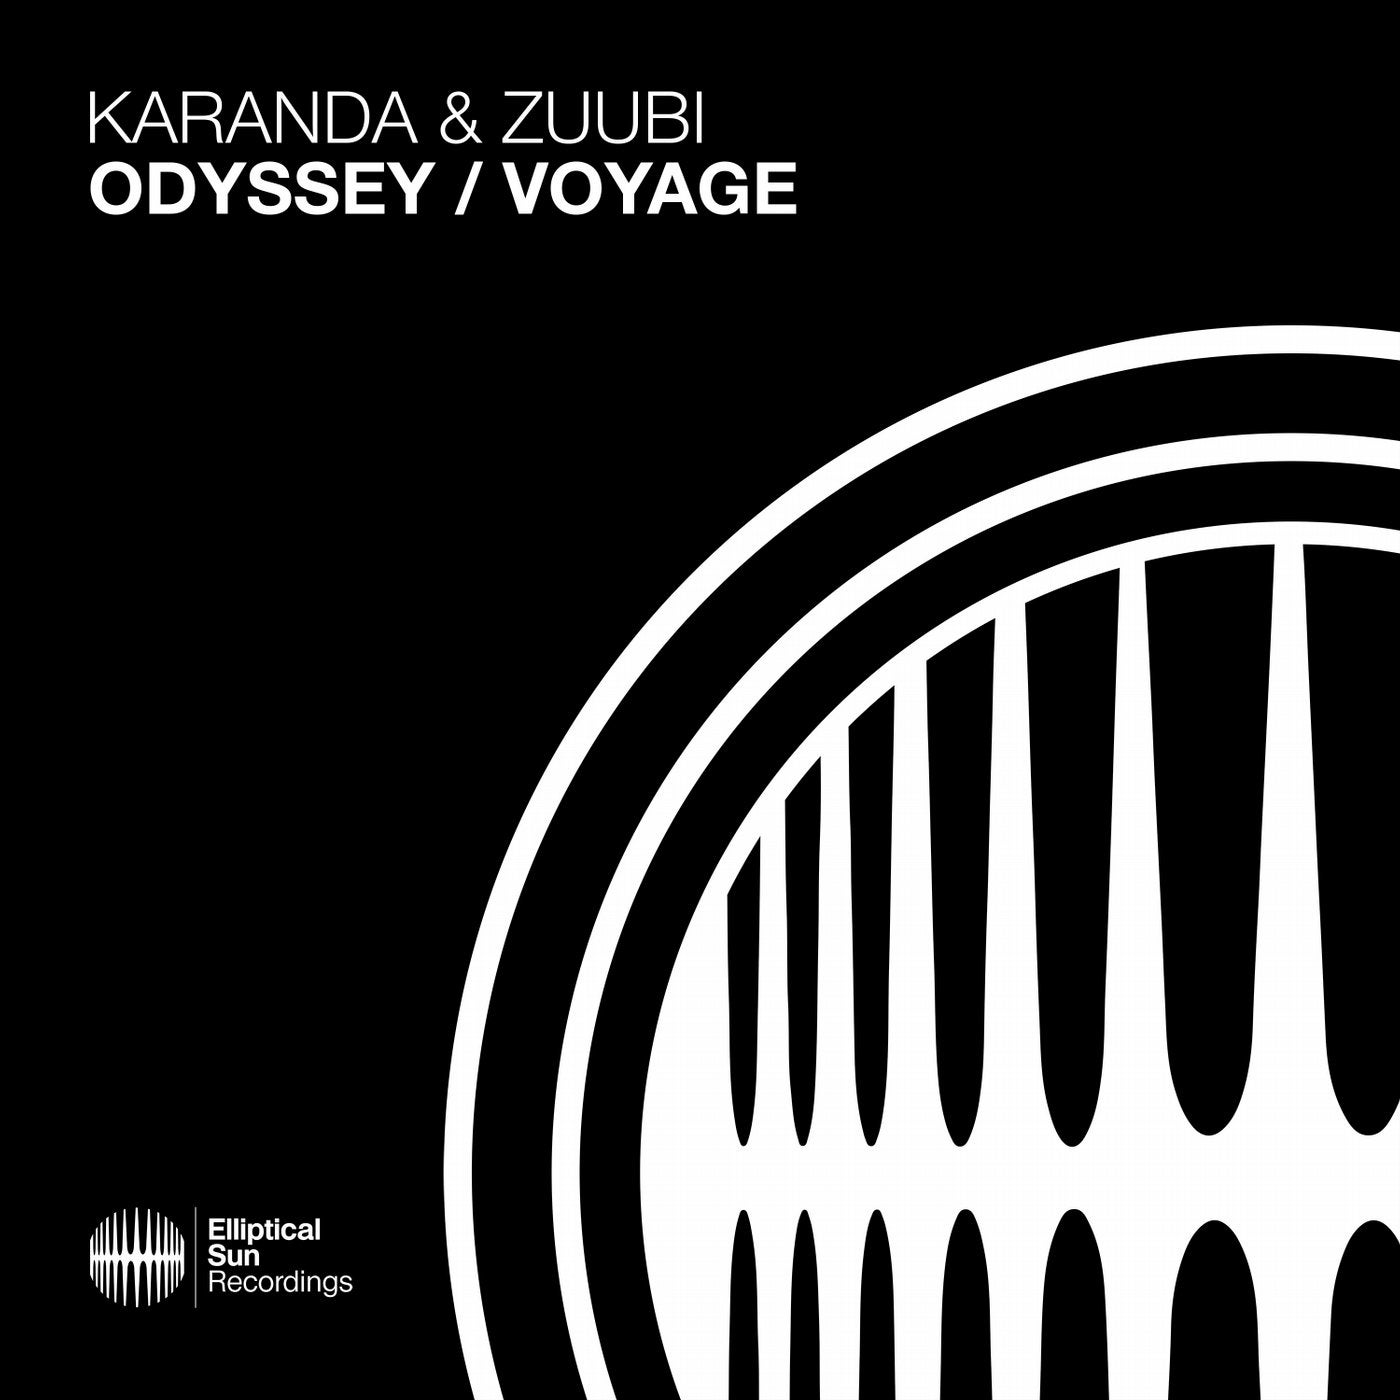 Odyssey / Voyage